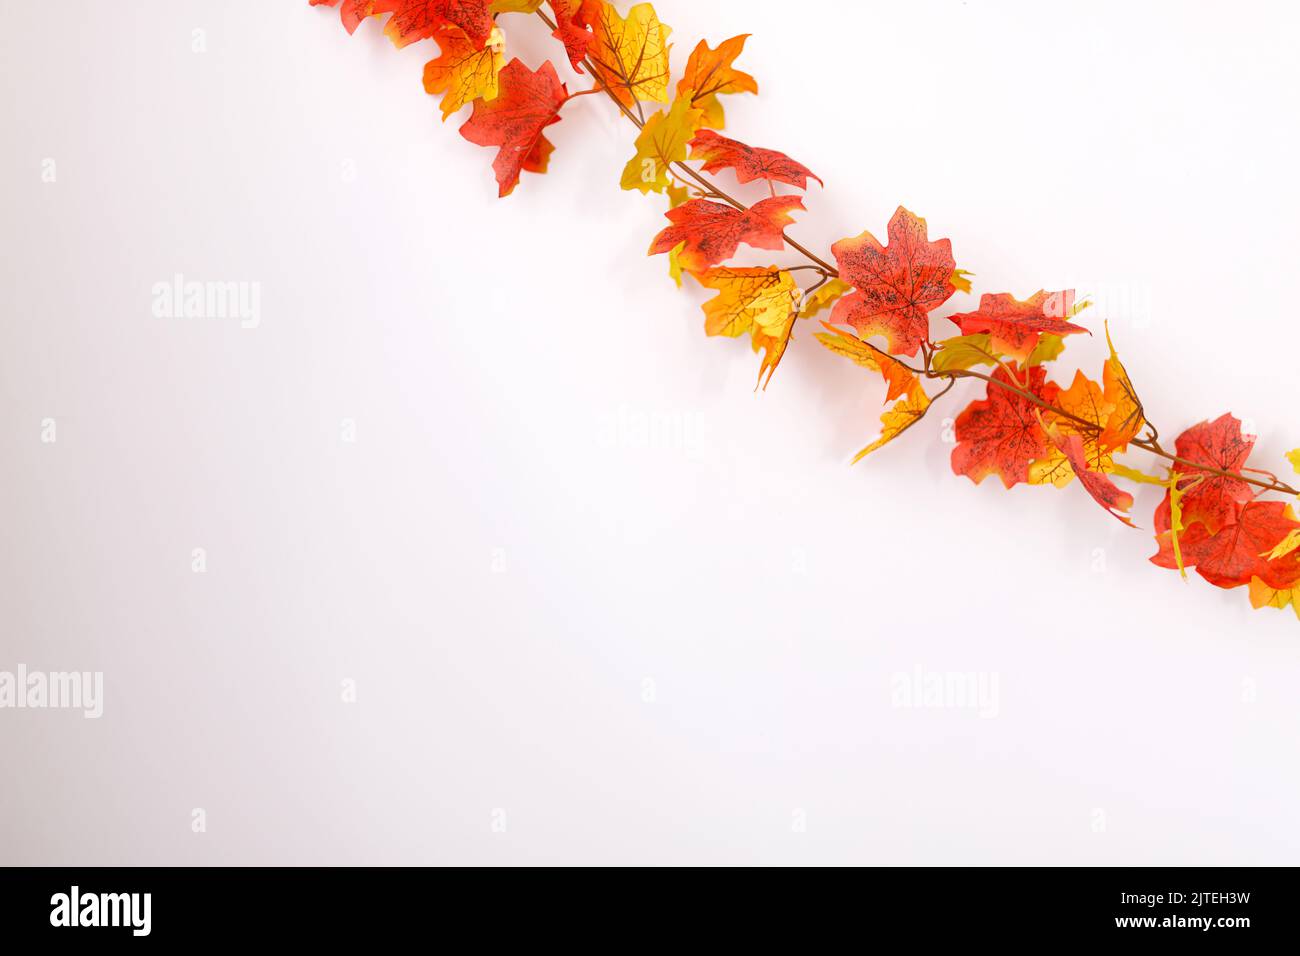 Thanksgiving background. Autumn or fall season. Stock Photo